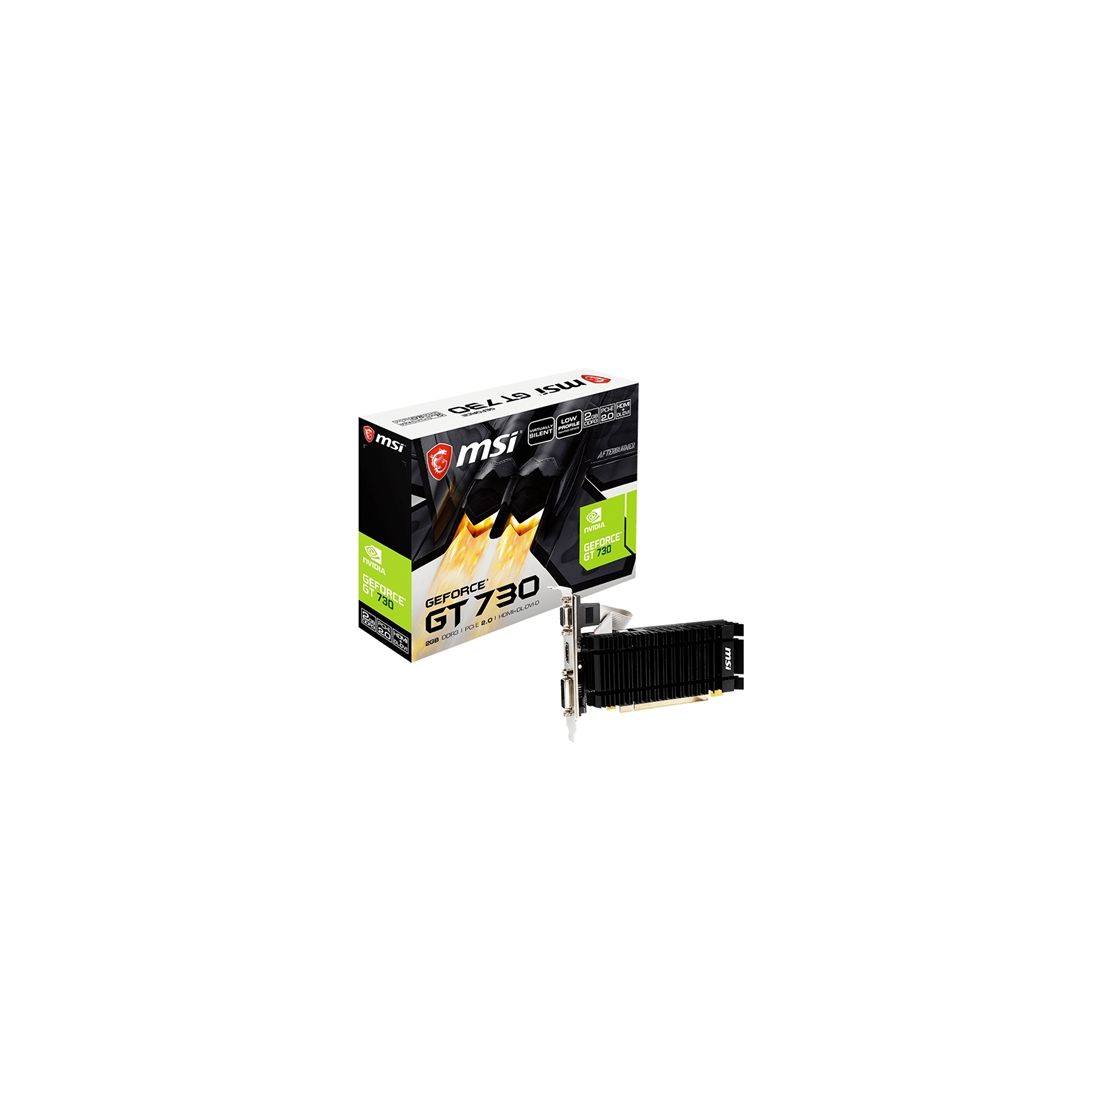 MSI VGA NVIDIA N730K 2GD3H LPV1 2GB DDR3